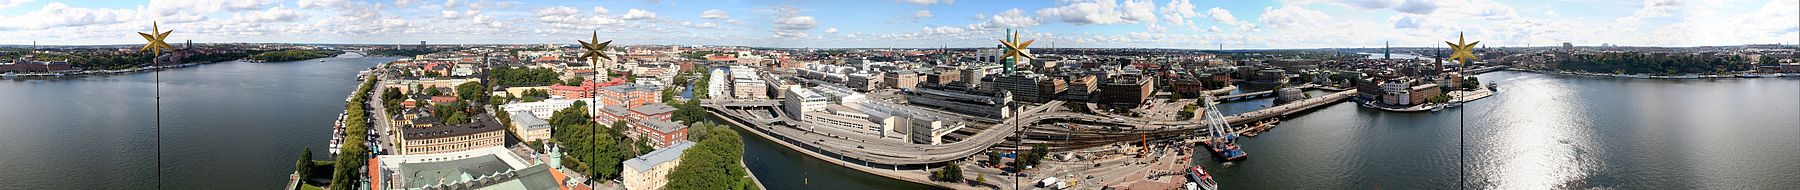 תמונה פנורמית של סטוקהולם - עיר של מים רבים. הכוכבים שבחזית שייכים למגדל בית העירייה, שממנו צולמה התמונה